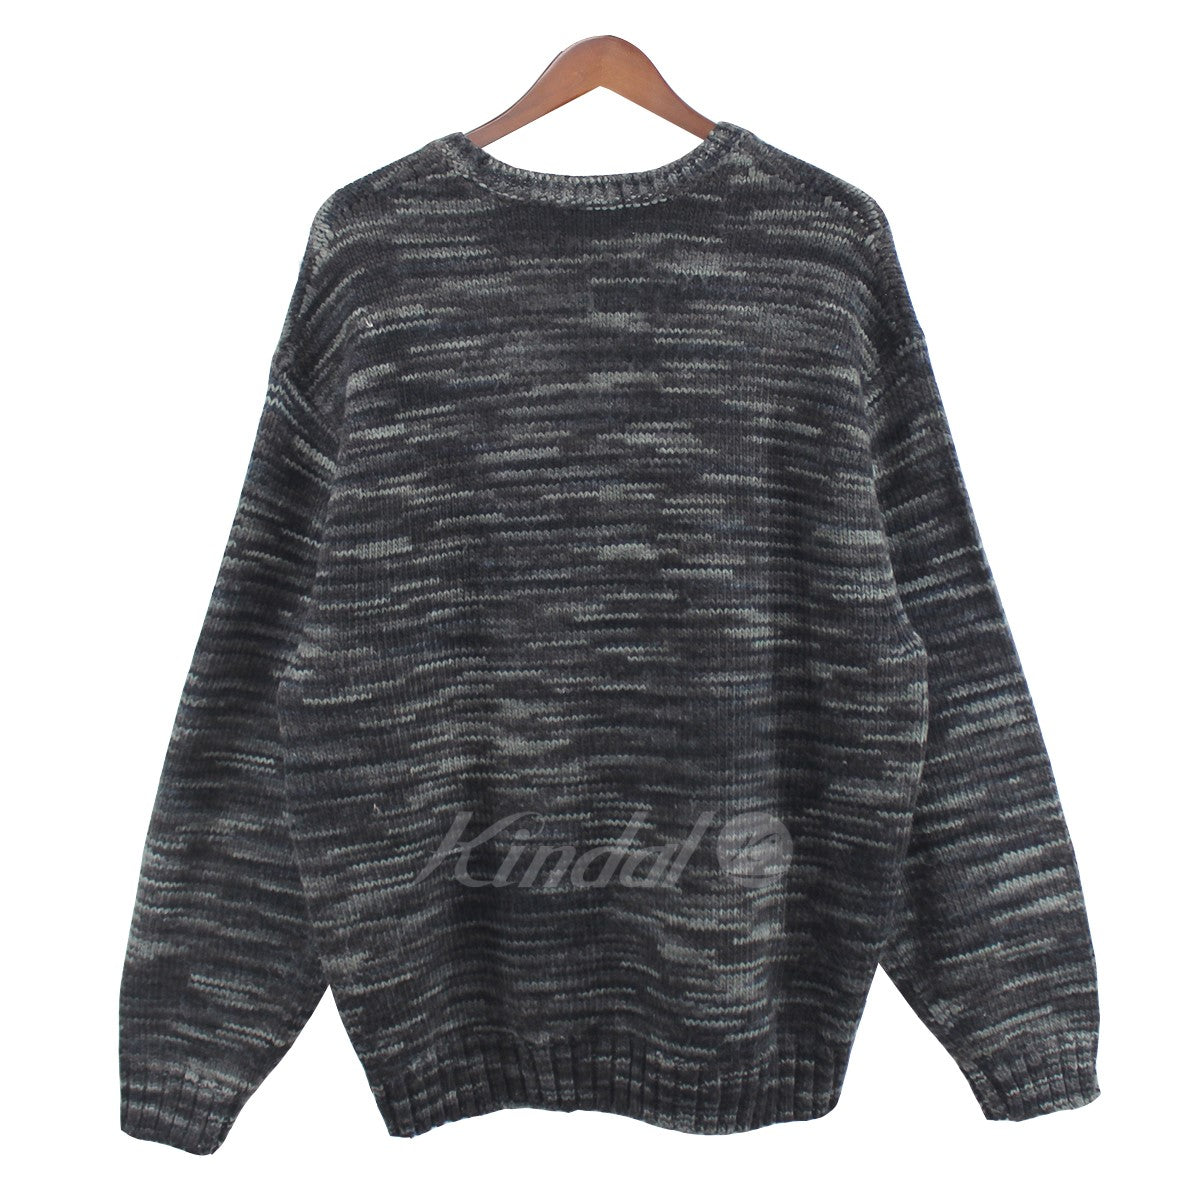 7,396円美品 20AW S Supreme Static Sweater 黒 ニット